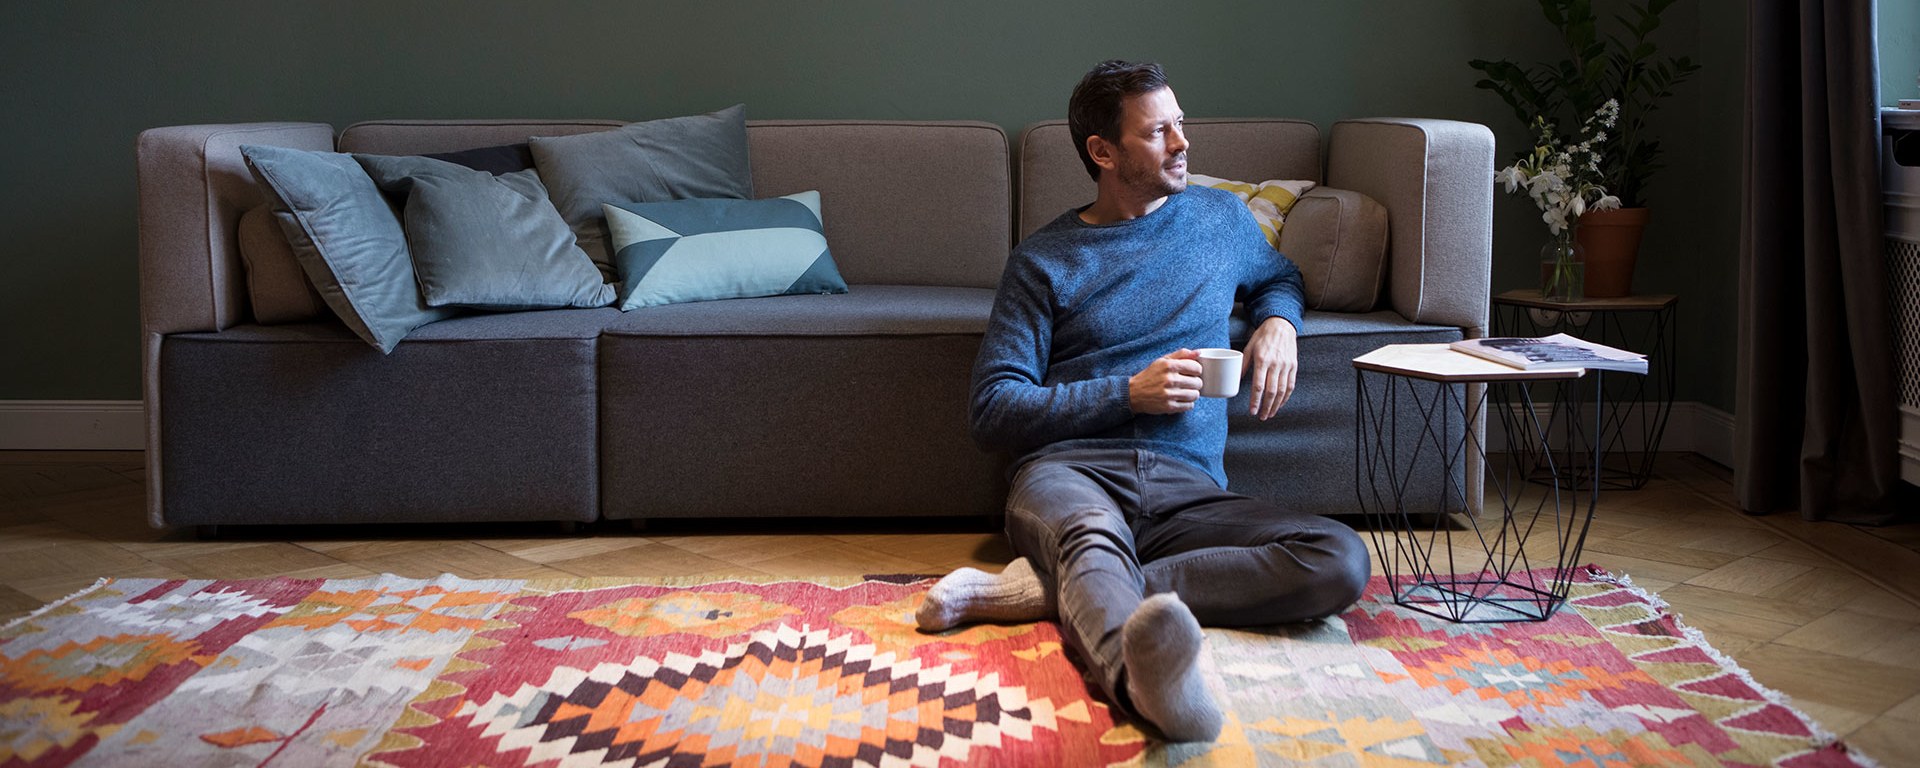 Ein entspannter Mann sitzt auf dem Boden neben einem Sofa, lehnt sich zurück und hält eine Tasse, während er zur Seite schaut. Ein gemütliches Wohnzimmer mit Kissen auf dem Sofa.